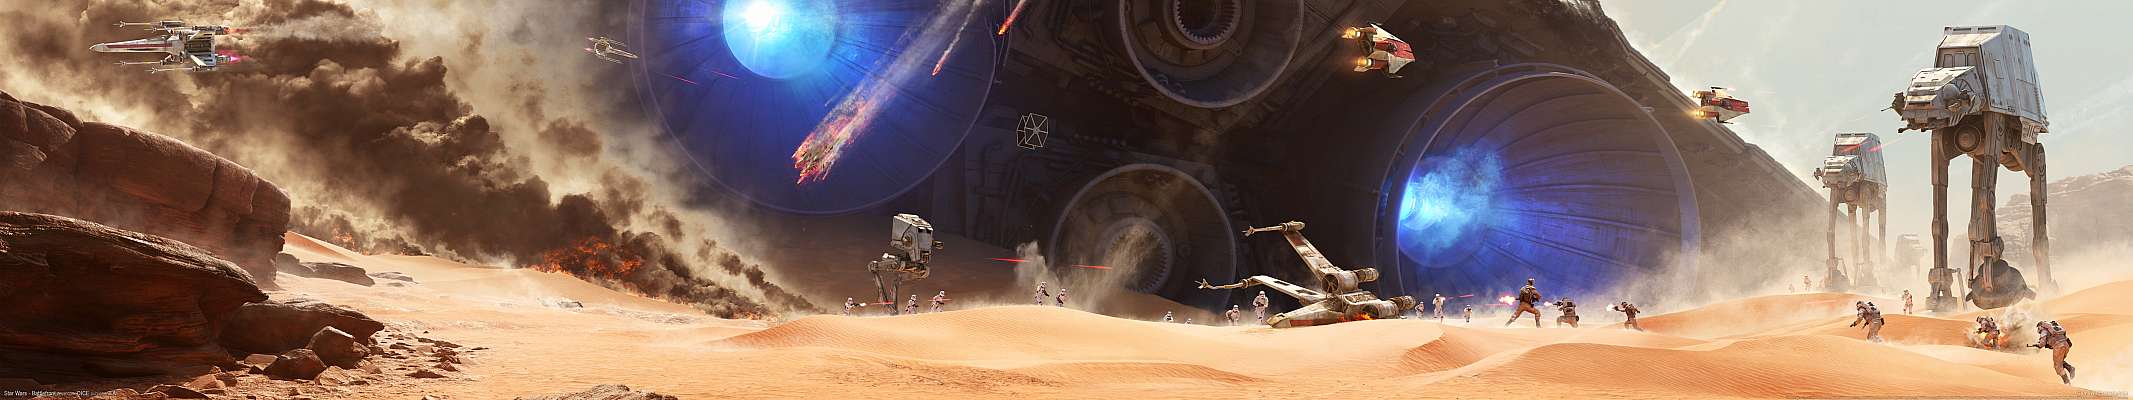 Star Wars - Battlefront triple screen achtergrond